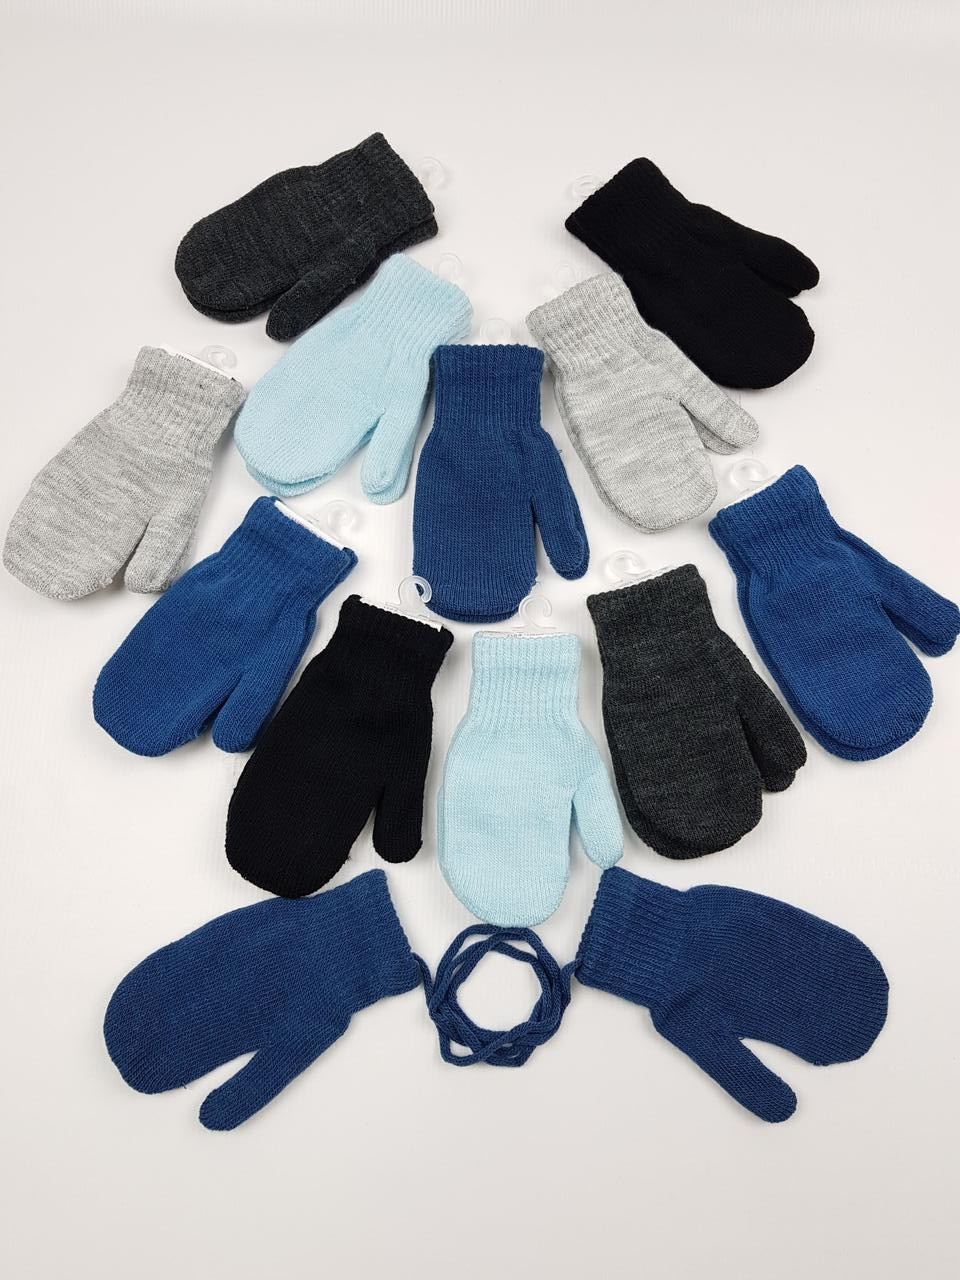 Дитячі польські рукавички для хлопців р. 15 см (4-6 р) (12 пар набір)